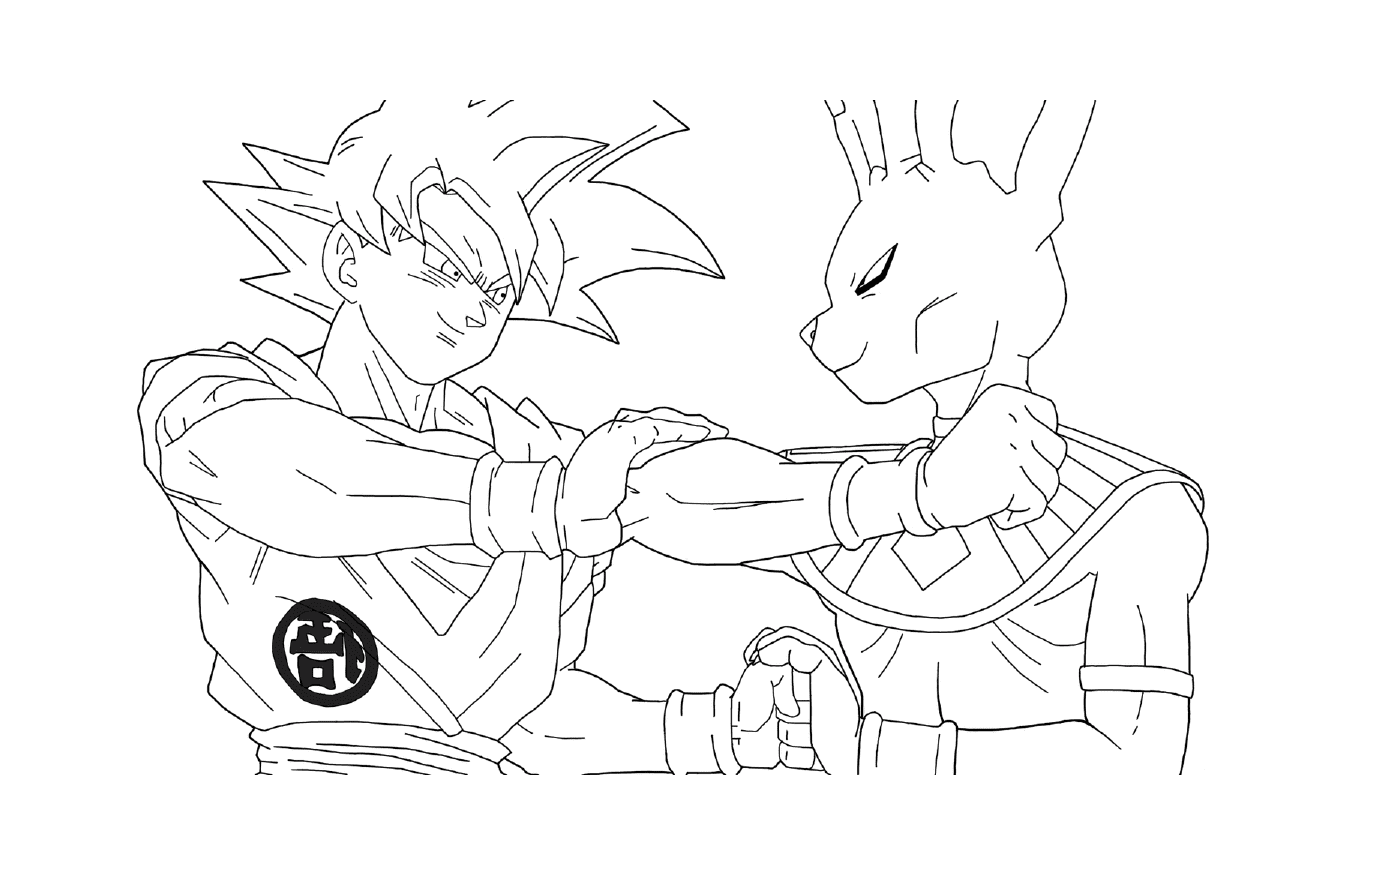  Beerus vs Goku Super Sayan Gold из DBZ 